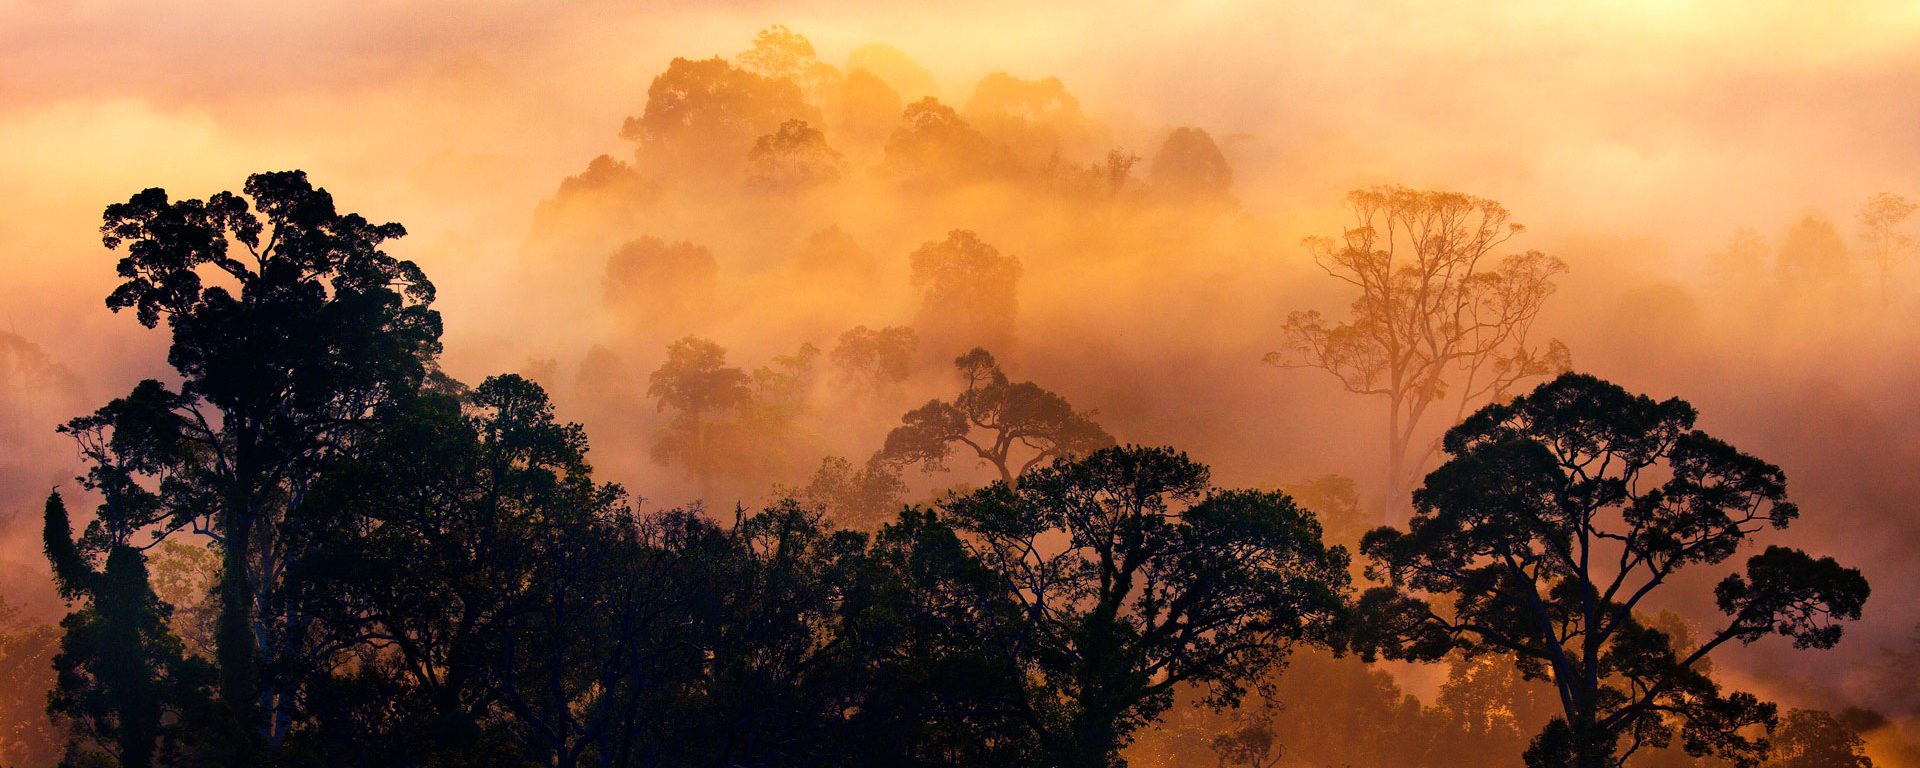 Rain forest at dawn in the Danum Valley, Borneo, Malaysia